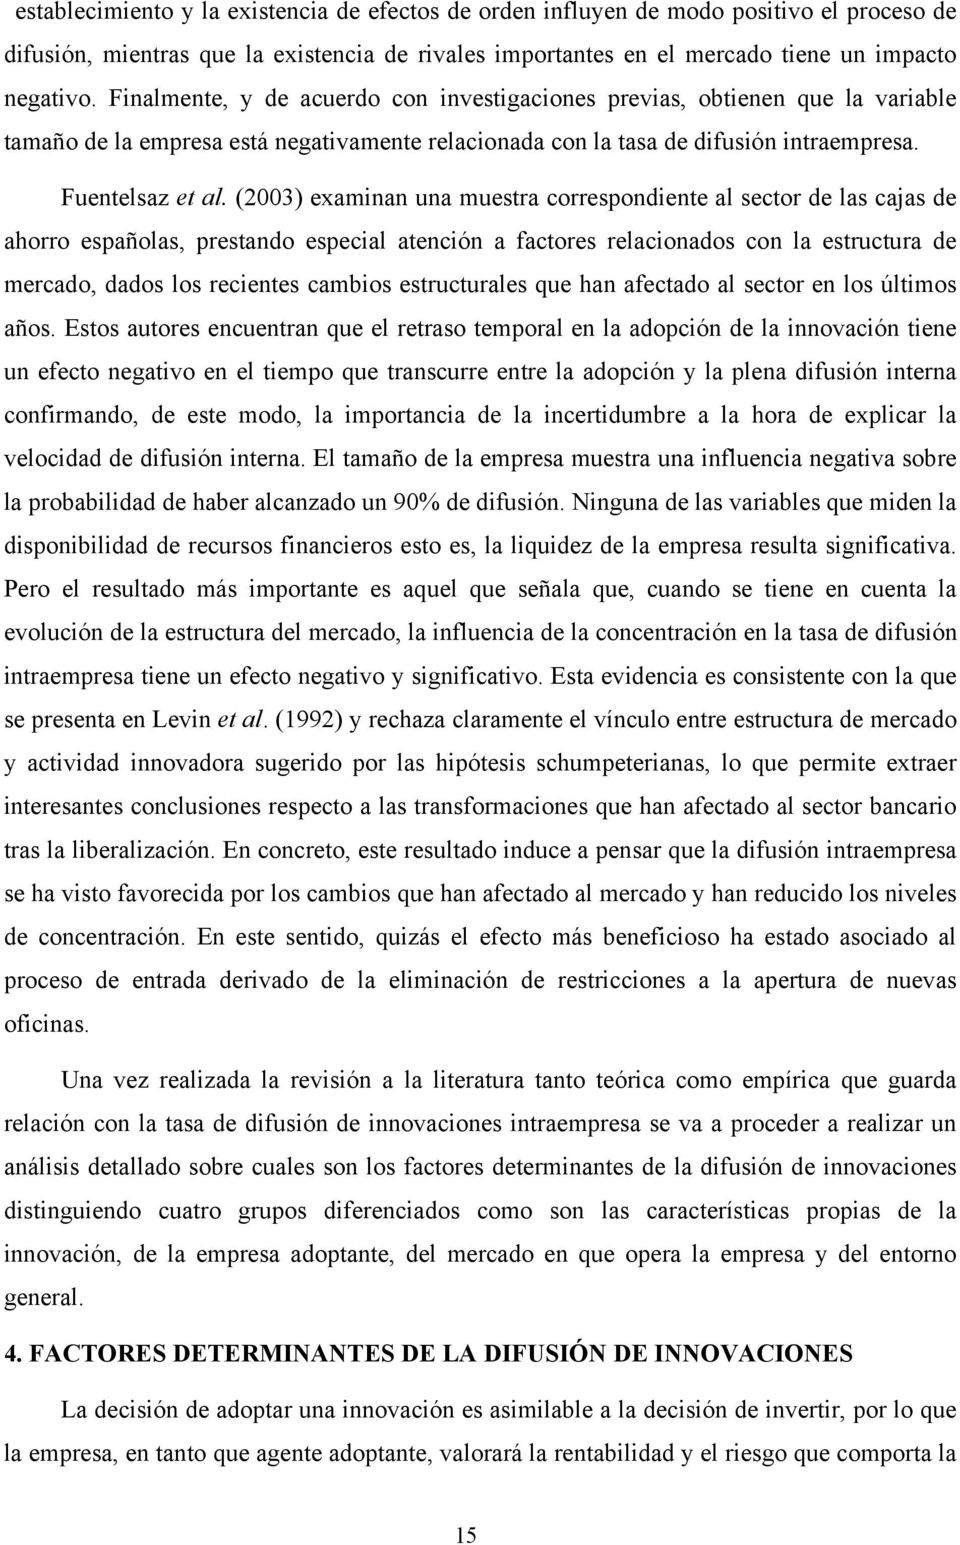 (2003) examinan una muestra correspondiente al sector de las cajas de ahorro españolas, prestando especial atención a factores relacionados con la estructura de mercado, dados los recientes cambios